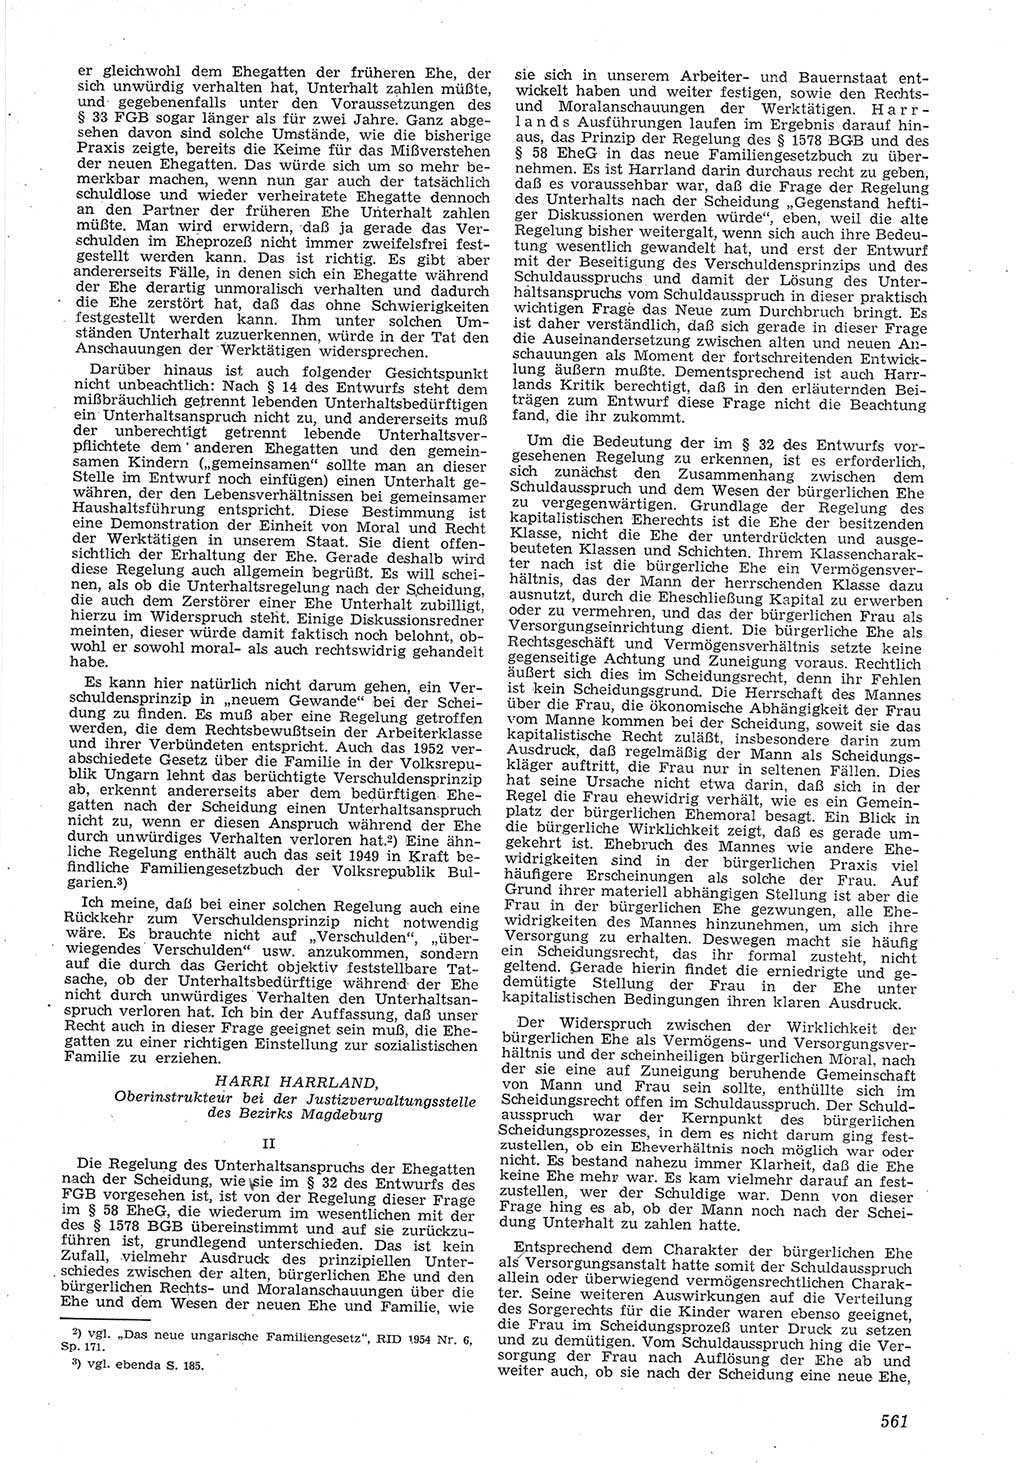 Neue Justiz (NJ), Zeitschrift für Recht und Rechtswissenschaft [Deutsche Demokratische Republik (DDR)], 8. Jahrgang 1954, Seite 561 (NJ DDR 1954, S. 561)